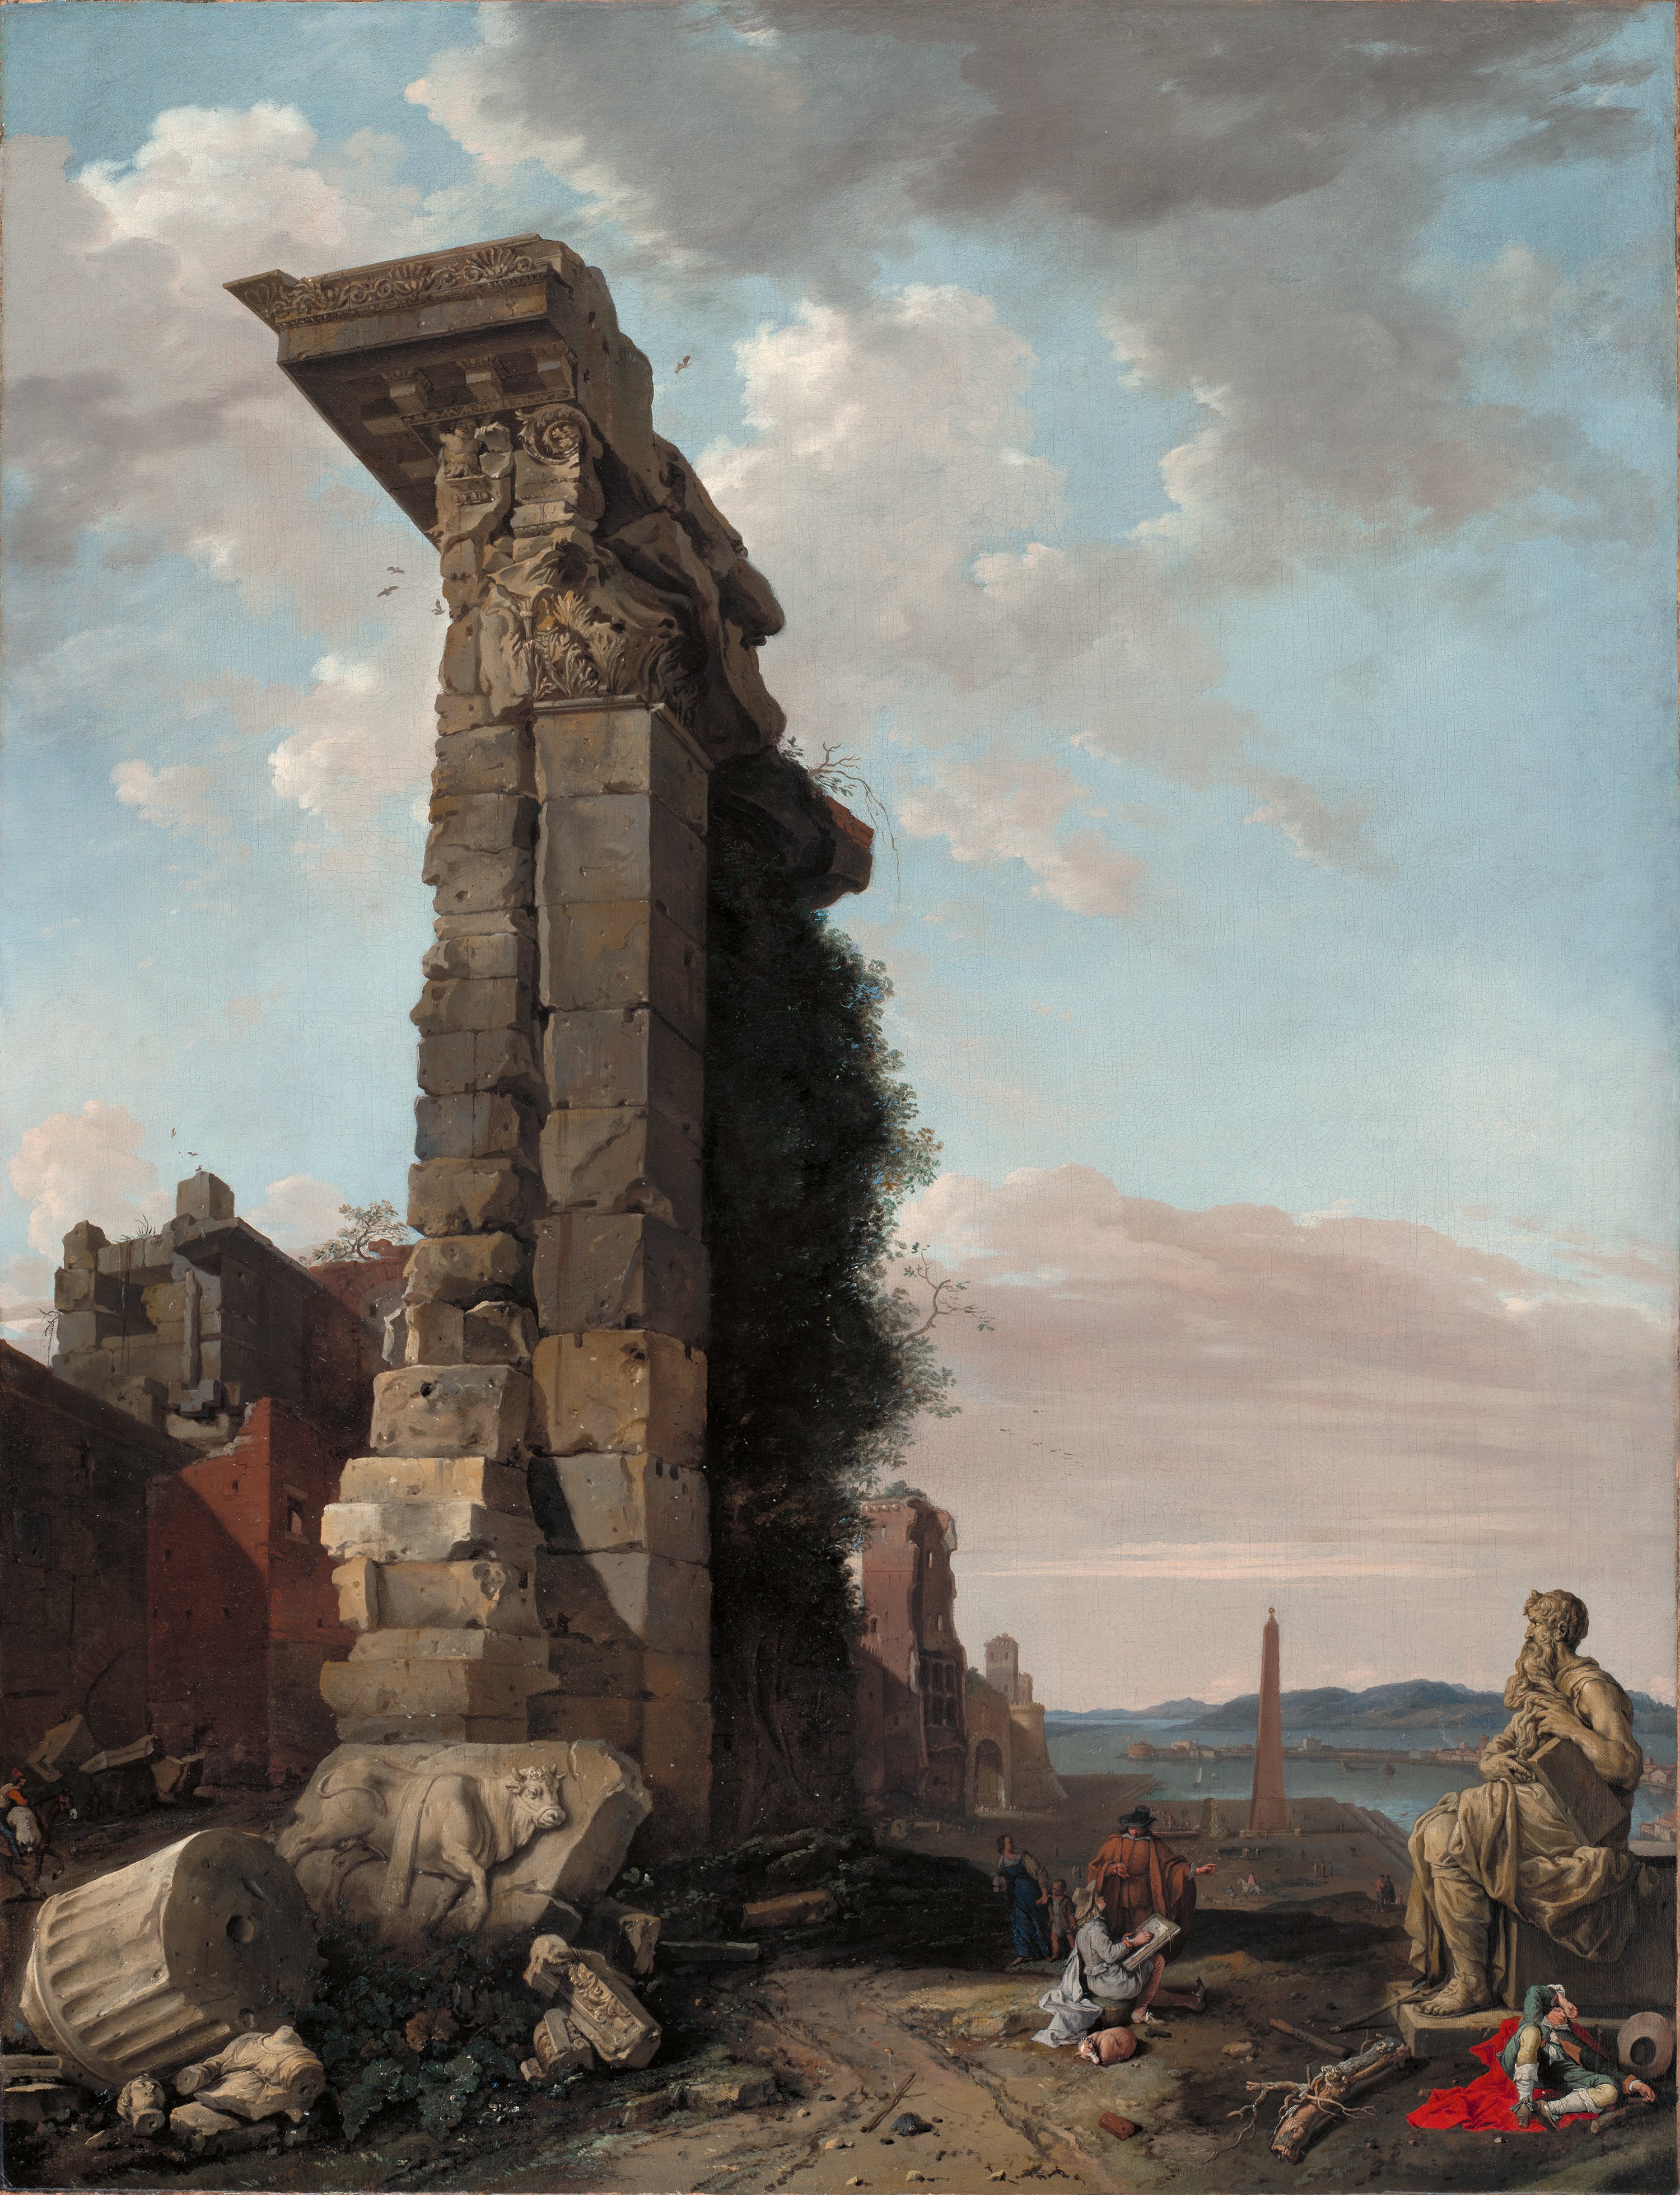 Capriccio with Roman Ruins, Sculptures and a Port. Vista idealizada con ruinas romanas esculturas y un puerto, 1650